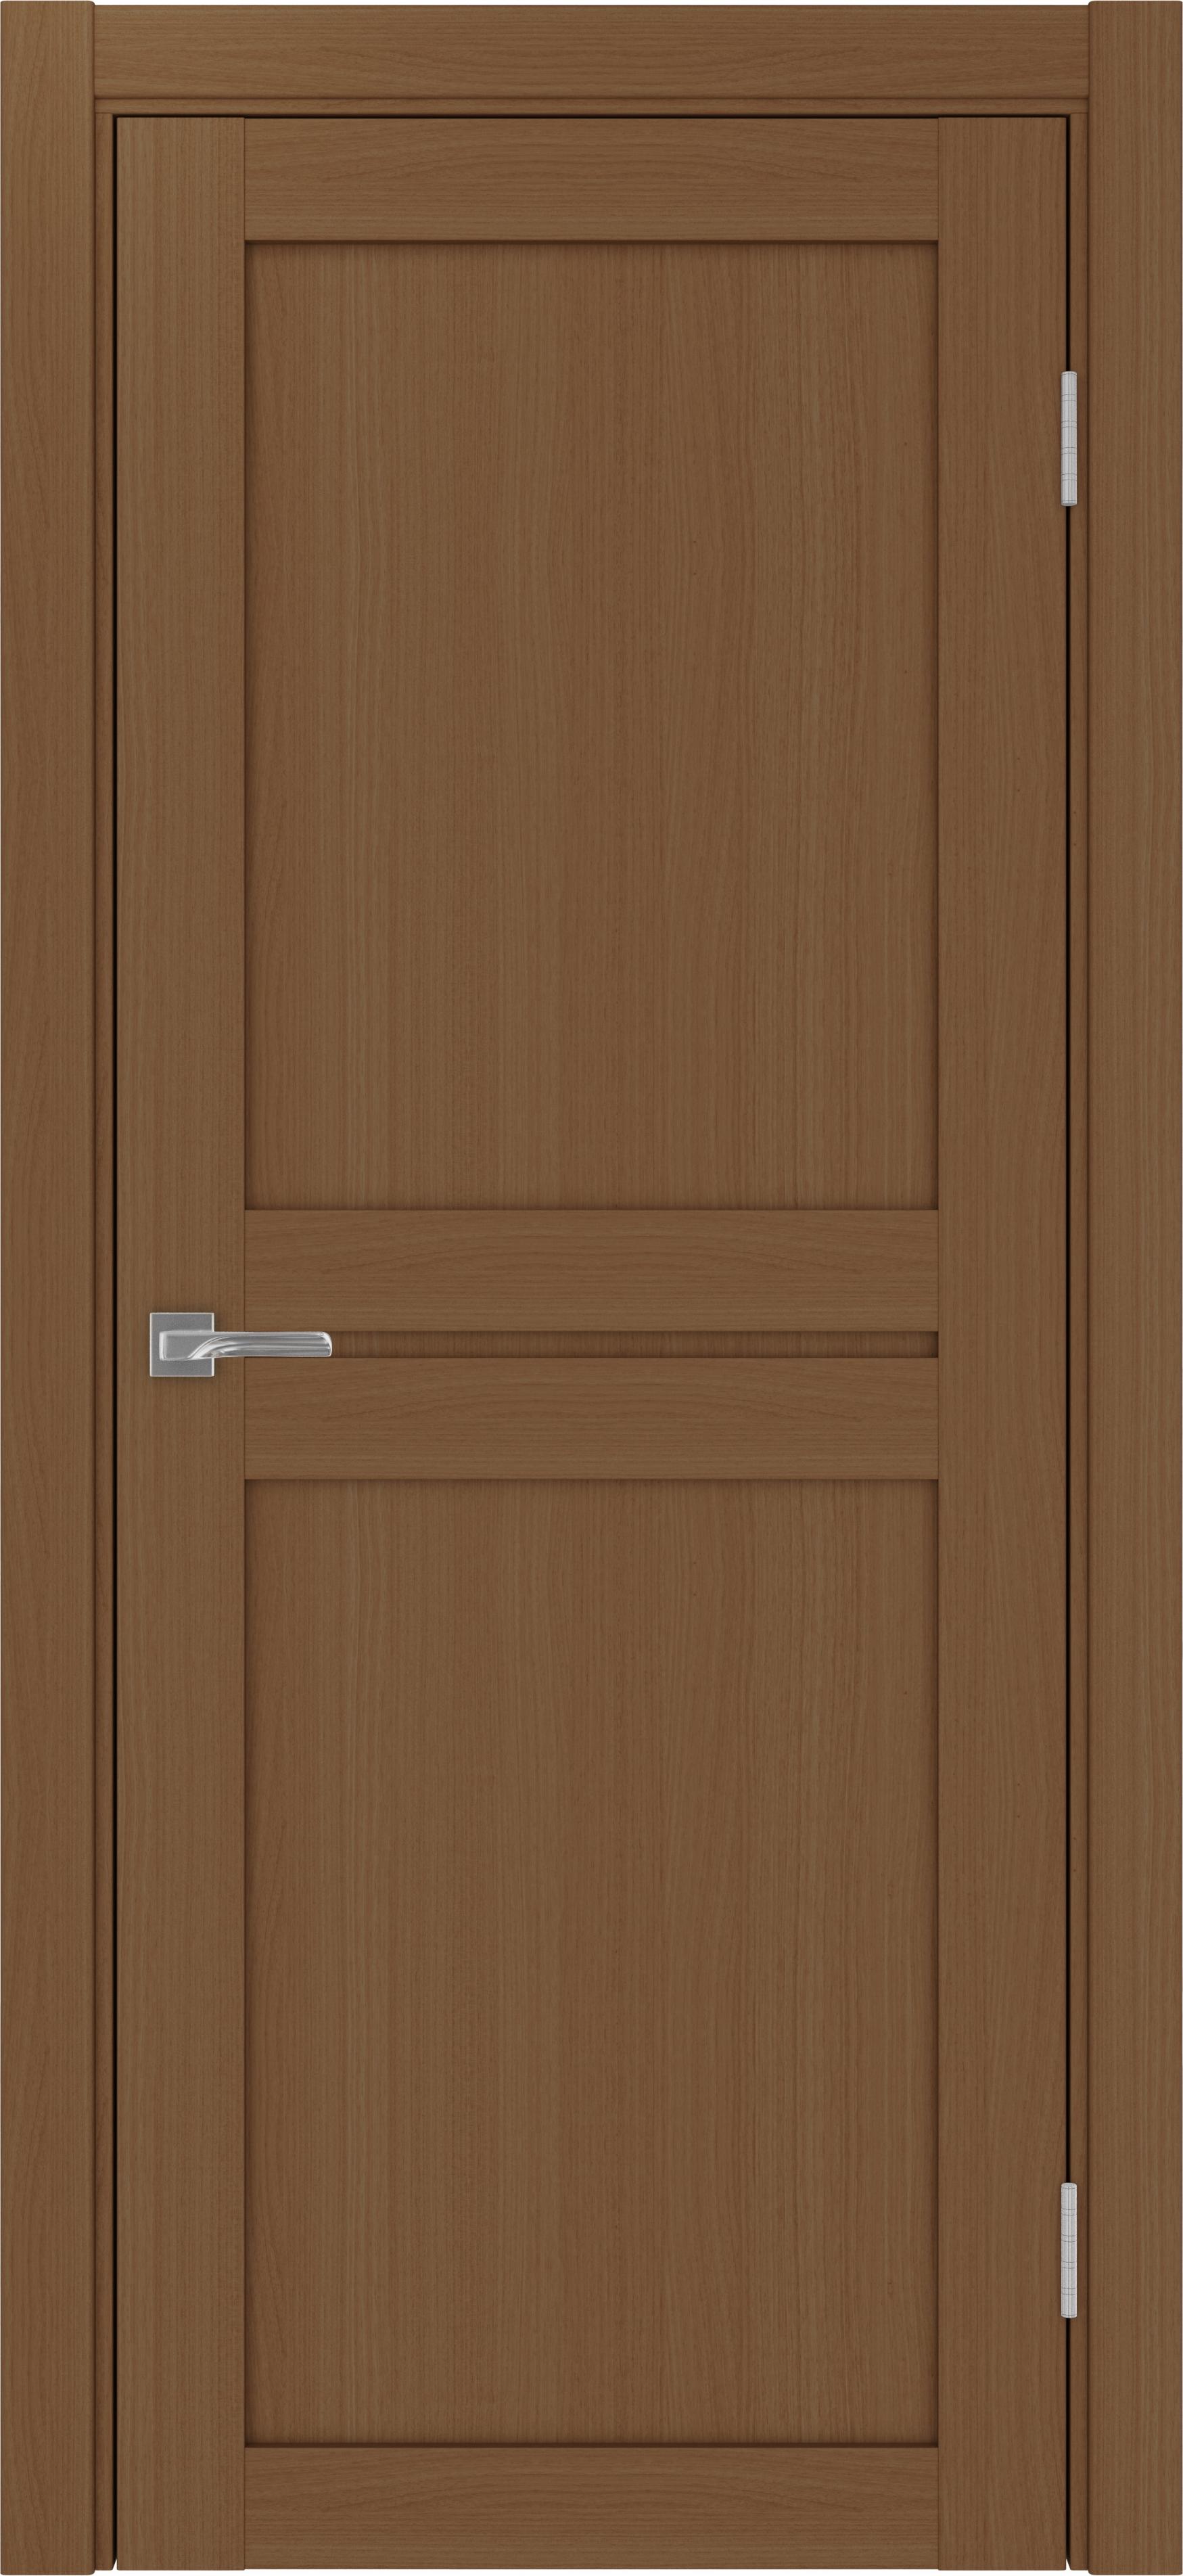 Межкомнатная дверь «Турин 520.111 Орех»